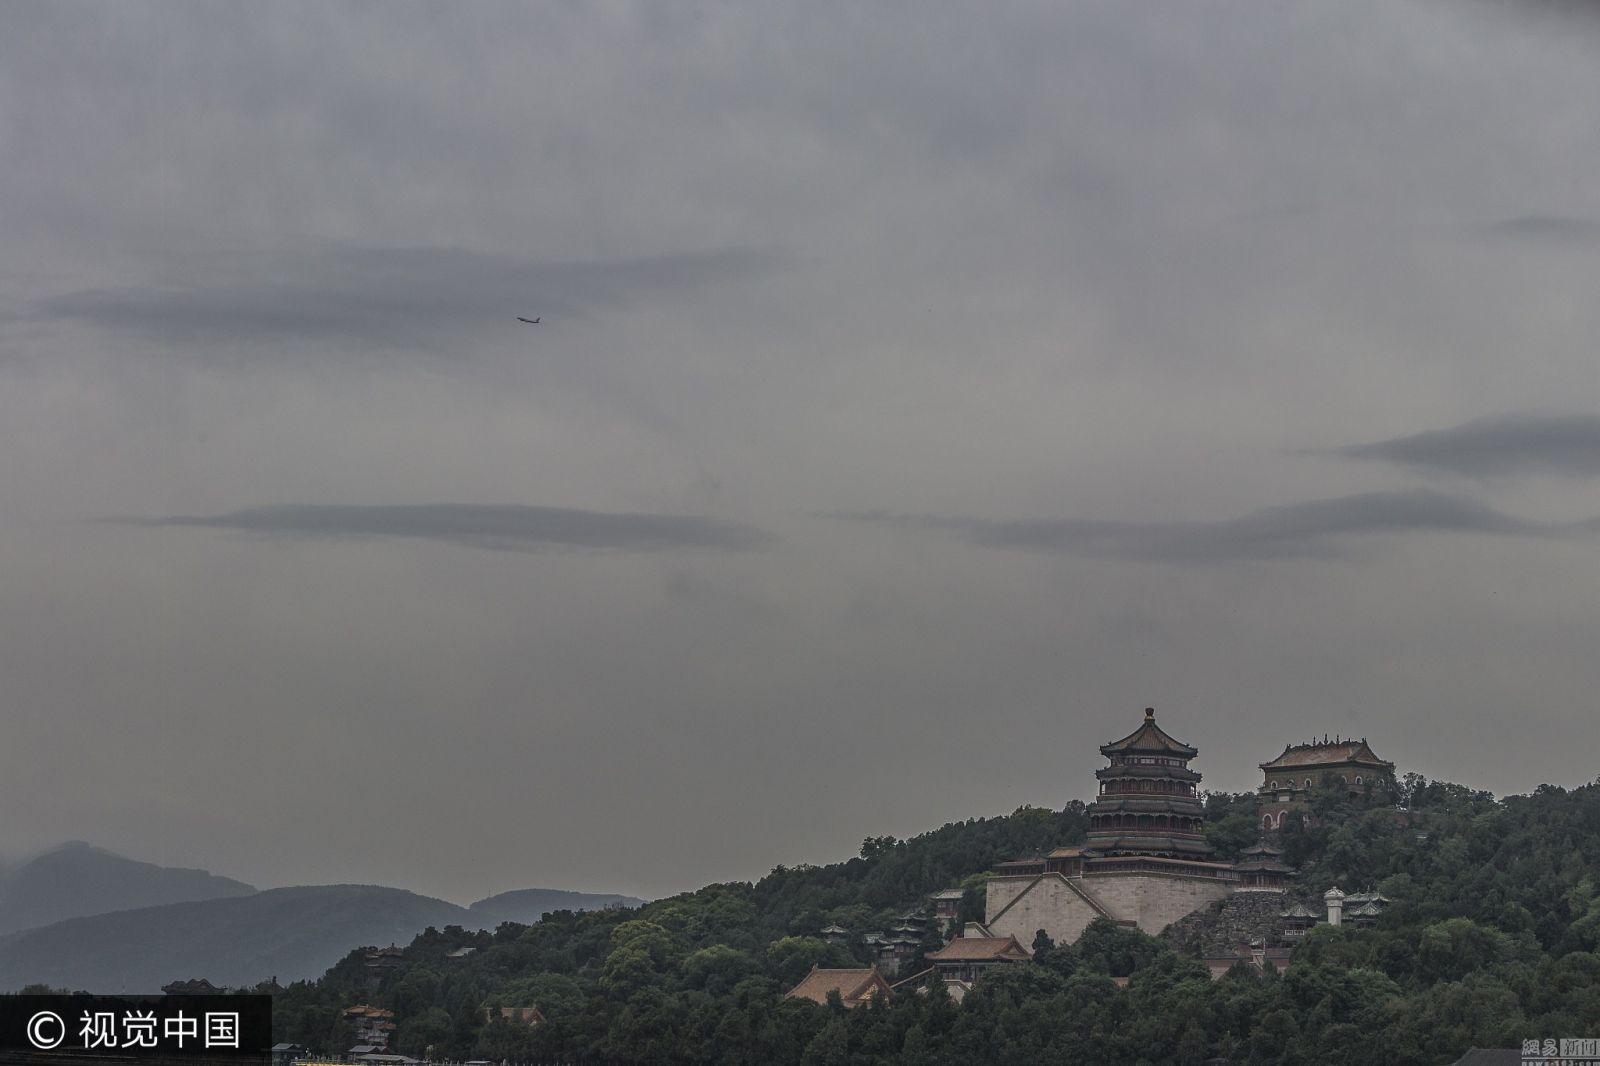 北京雨后云雾缭绕西山 皇家园林宛如水墨图 